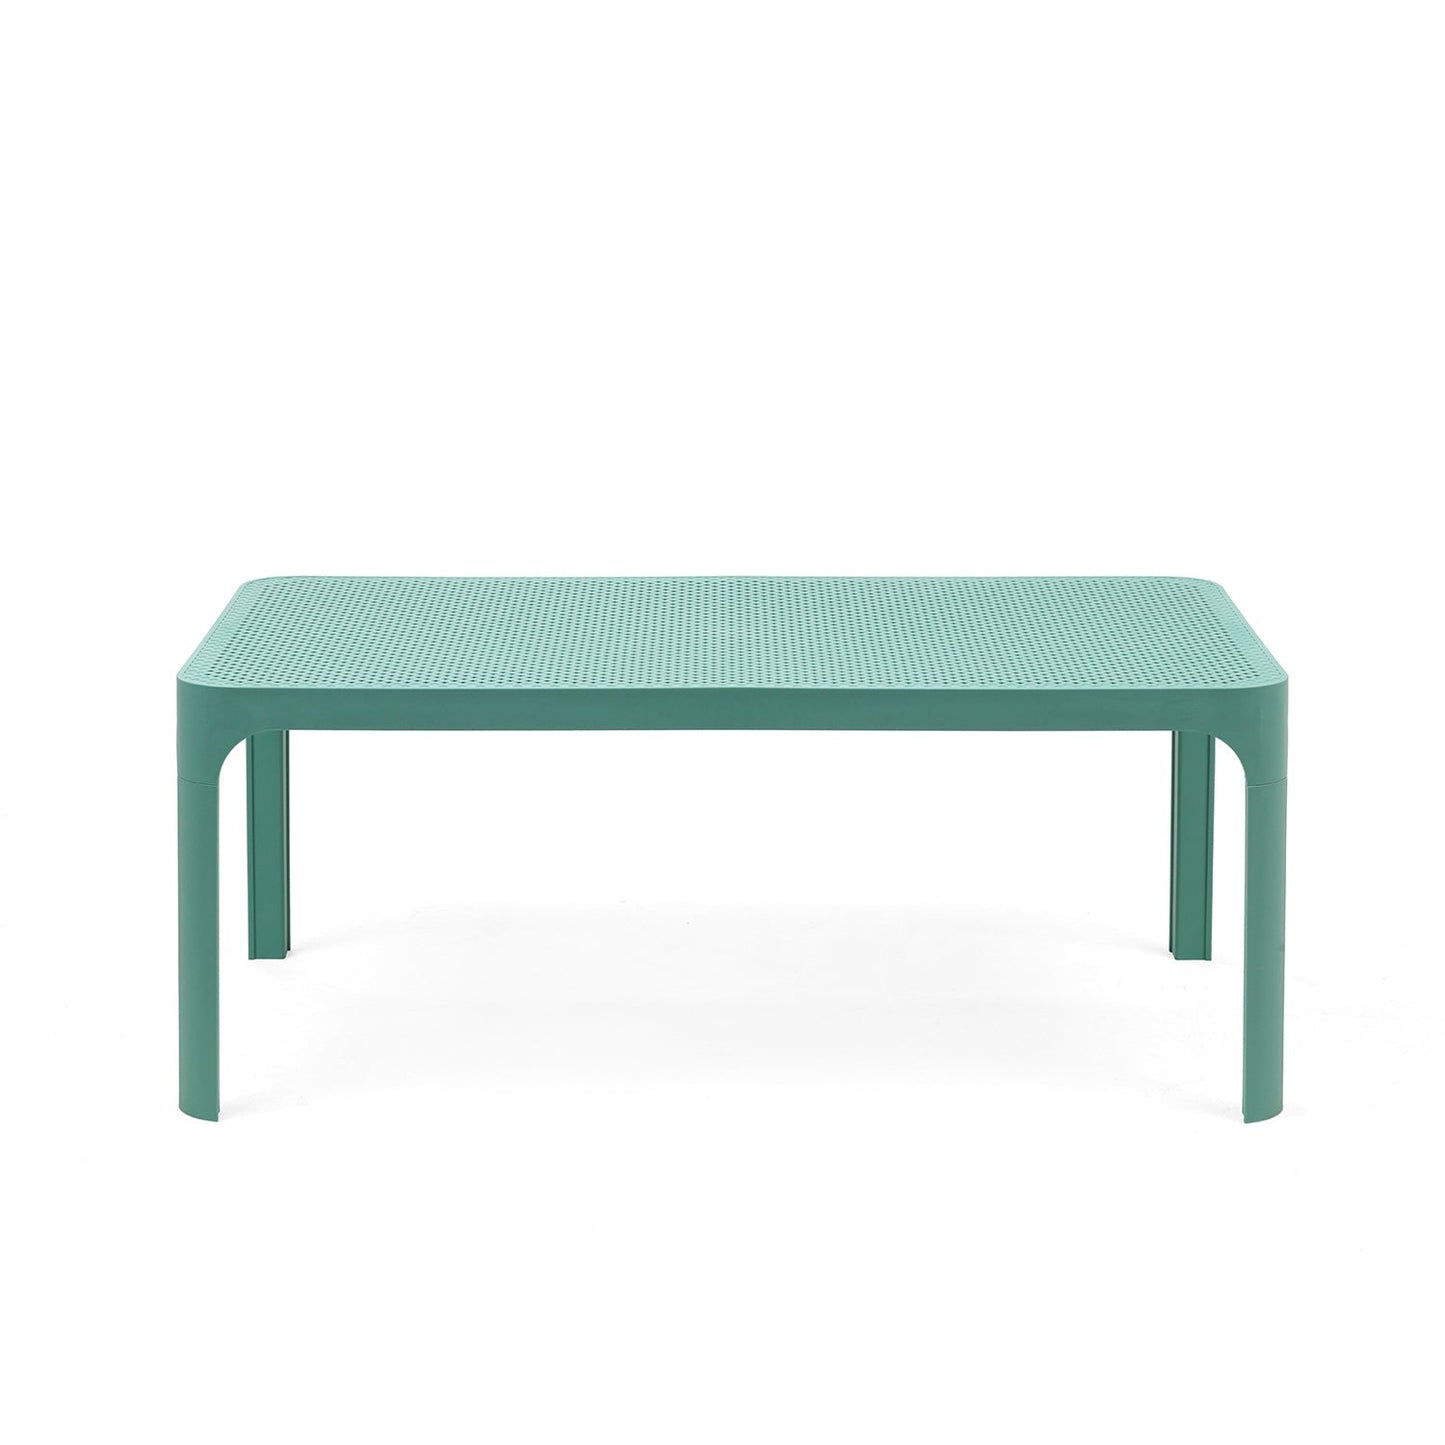 Turquoise Net Garden Table 100cm